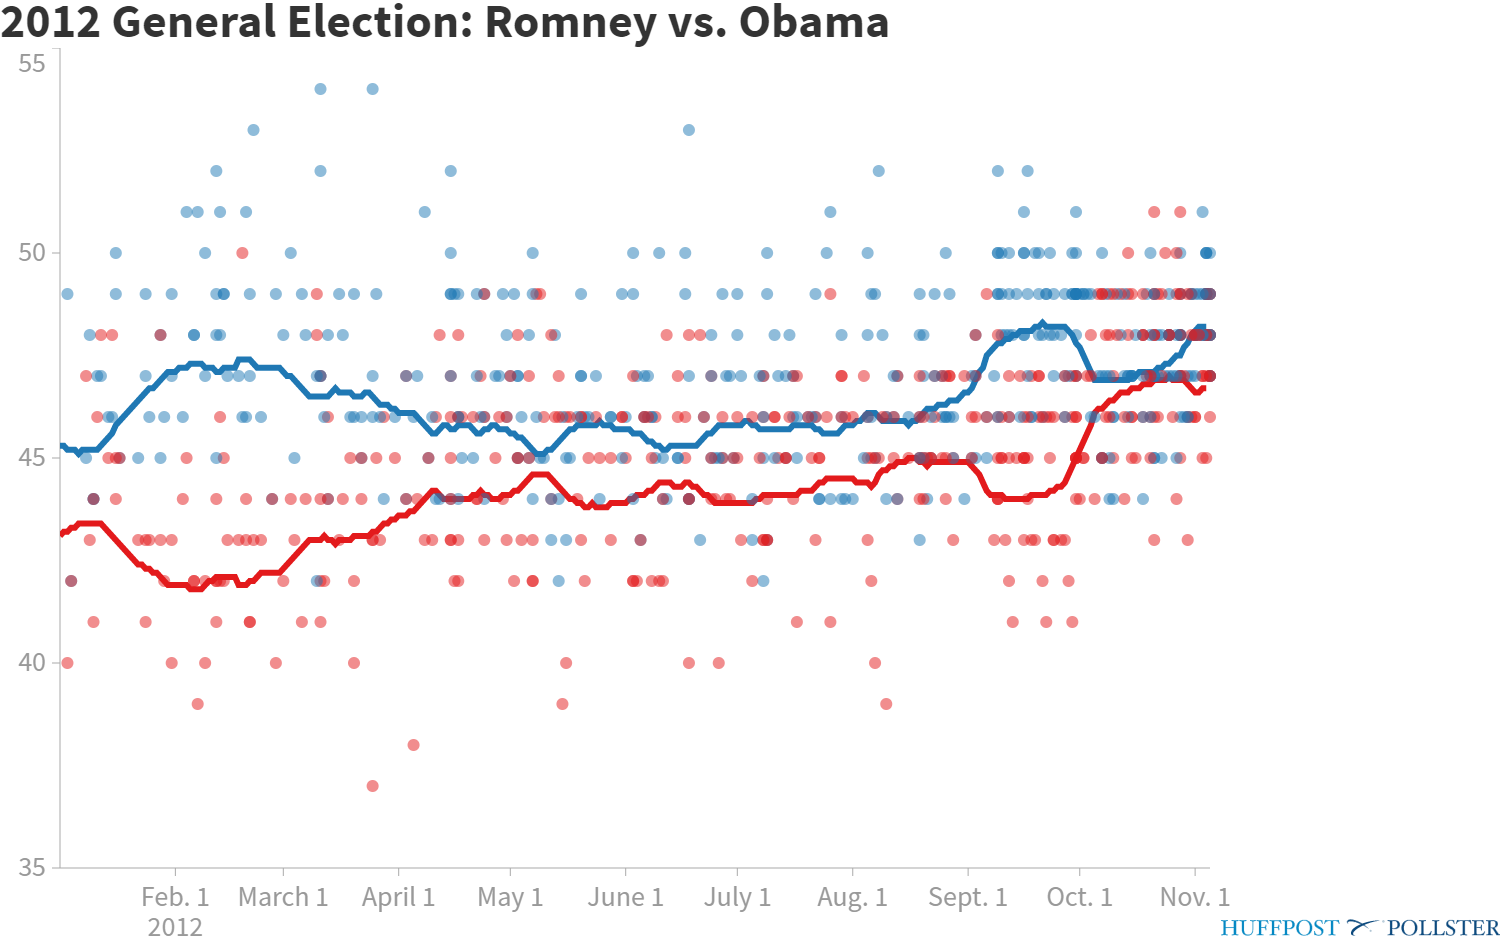 pollster-2012-general-election-romney-vs-obama.png